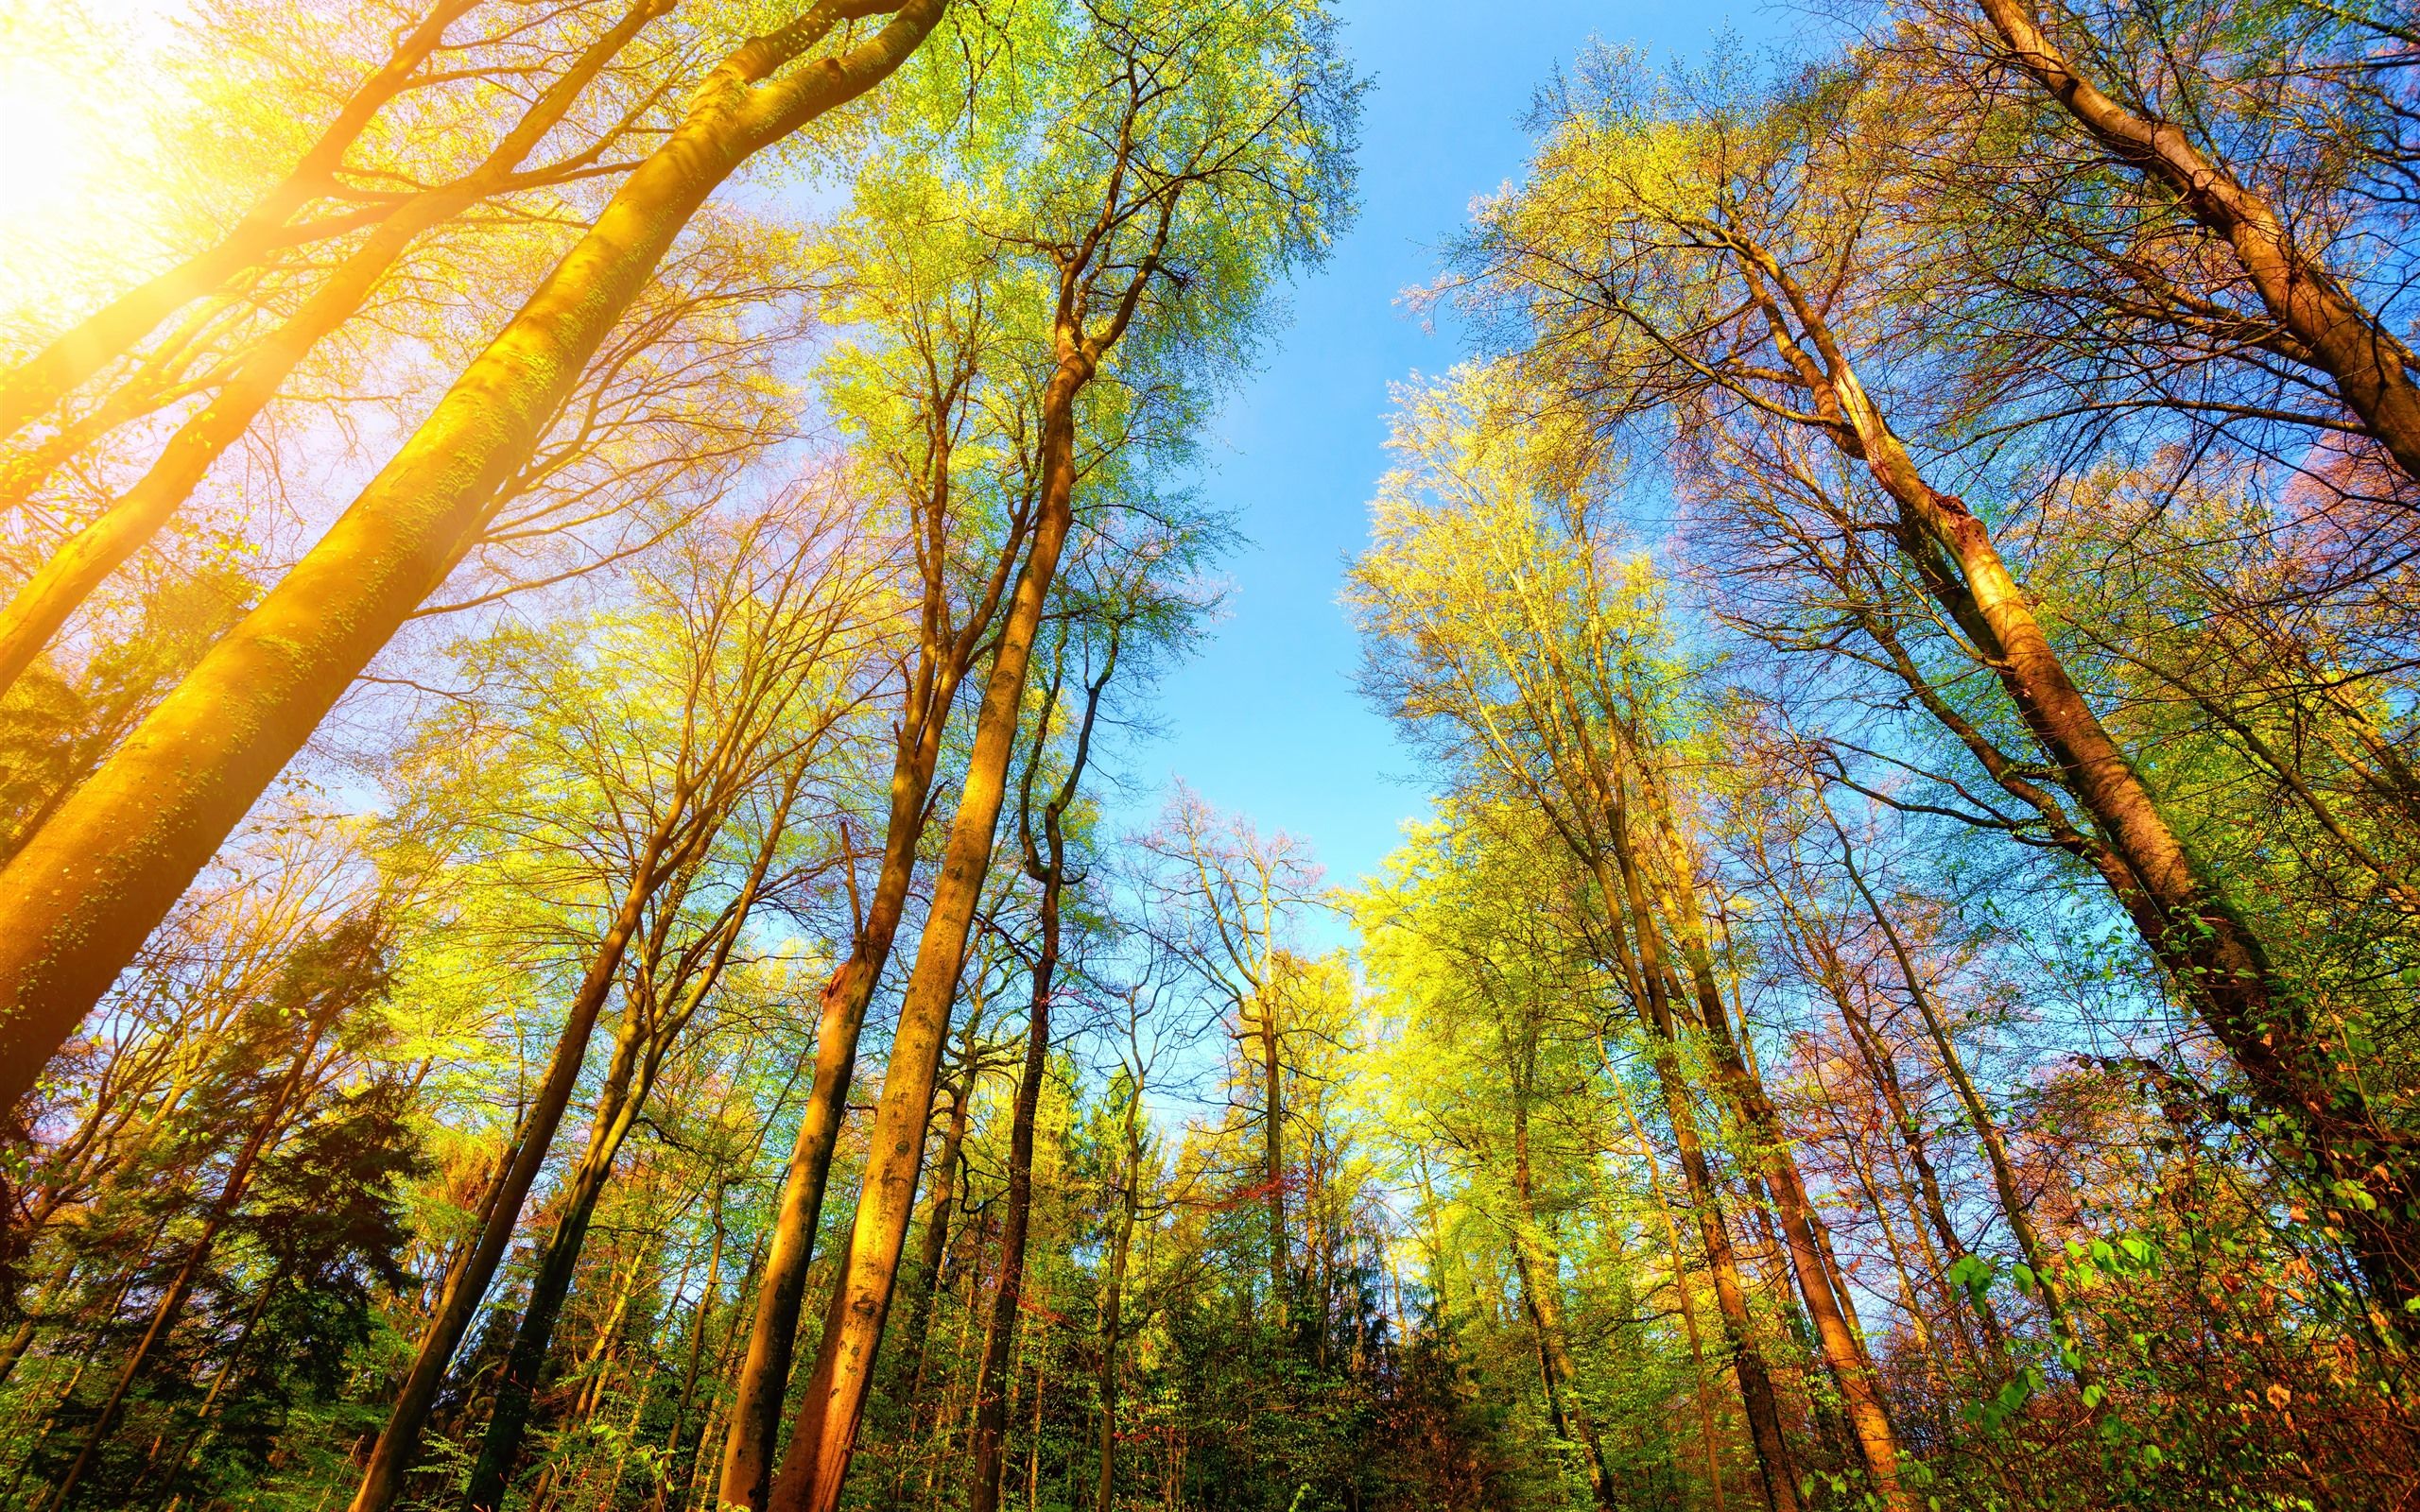 Natur Hintergrundbild 2560x1600. Bäume, Grün, Sonnenschein, Natur 5120x2880 UHD 5K Hintergrundbilder, HD, Bild